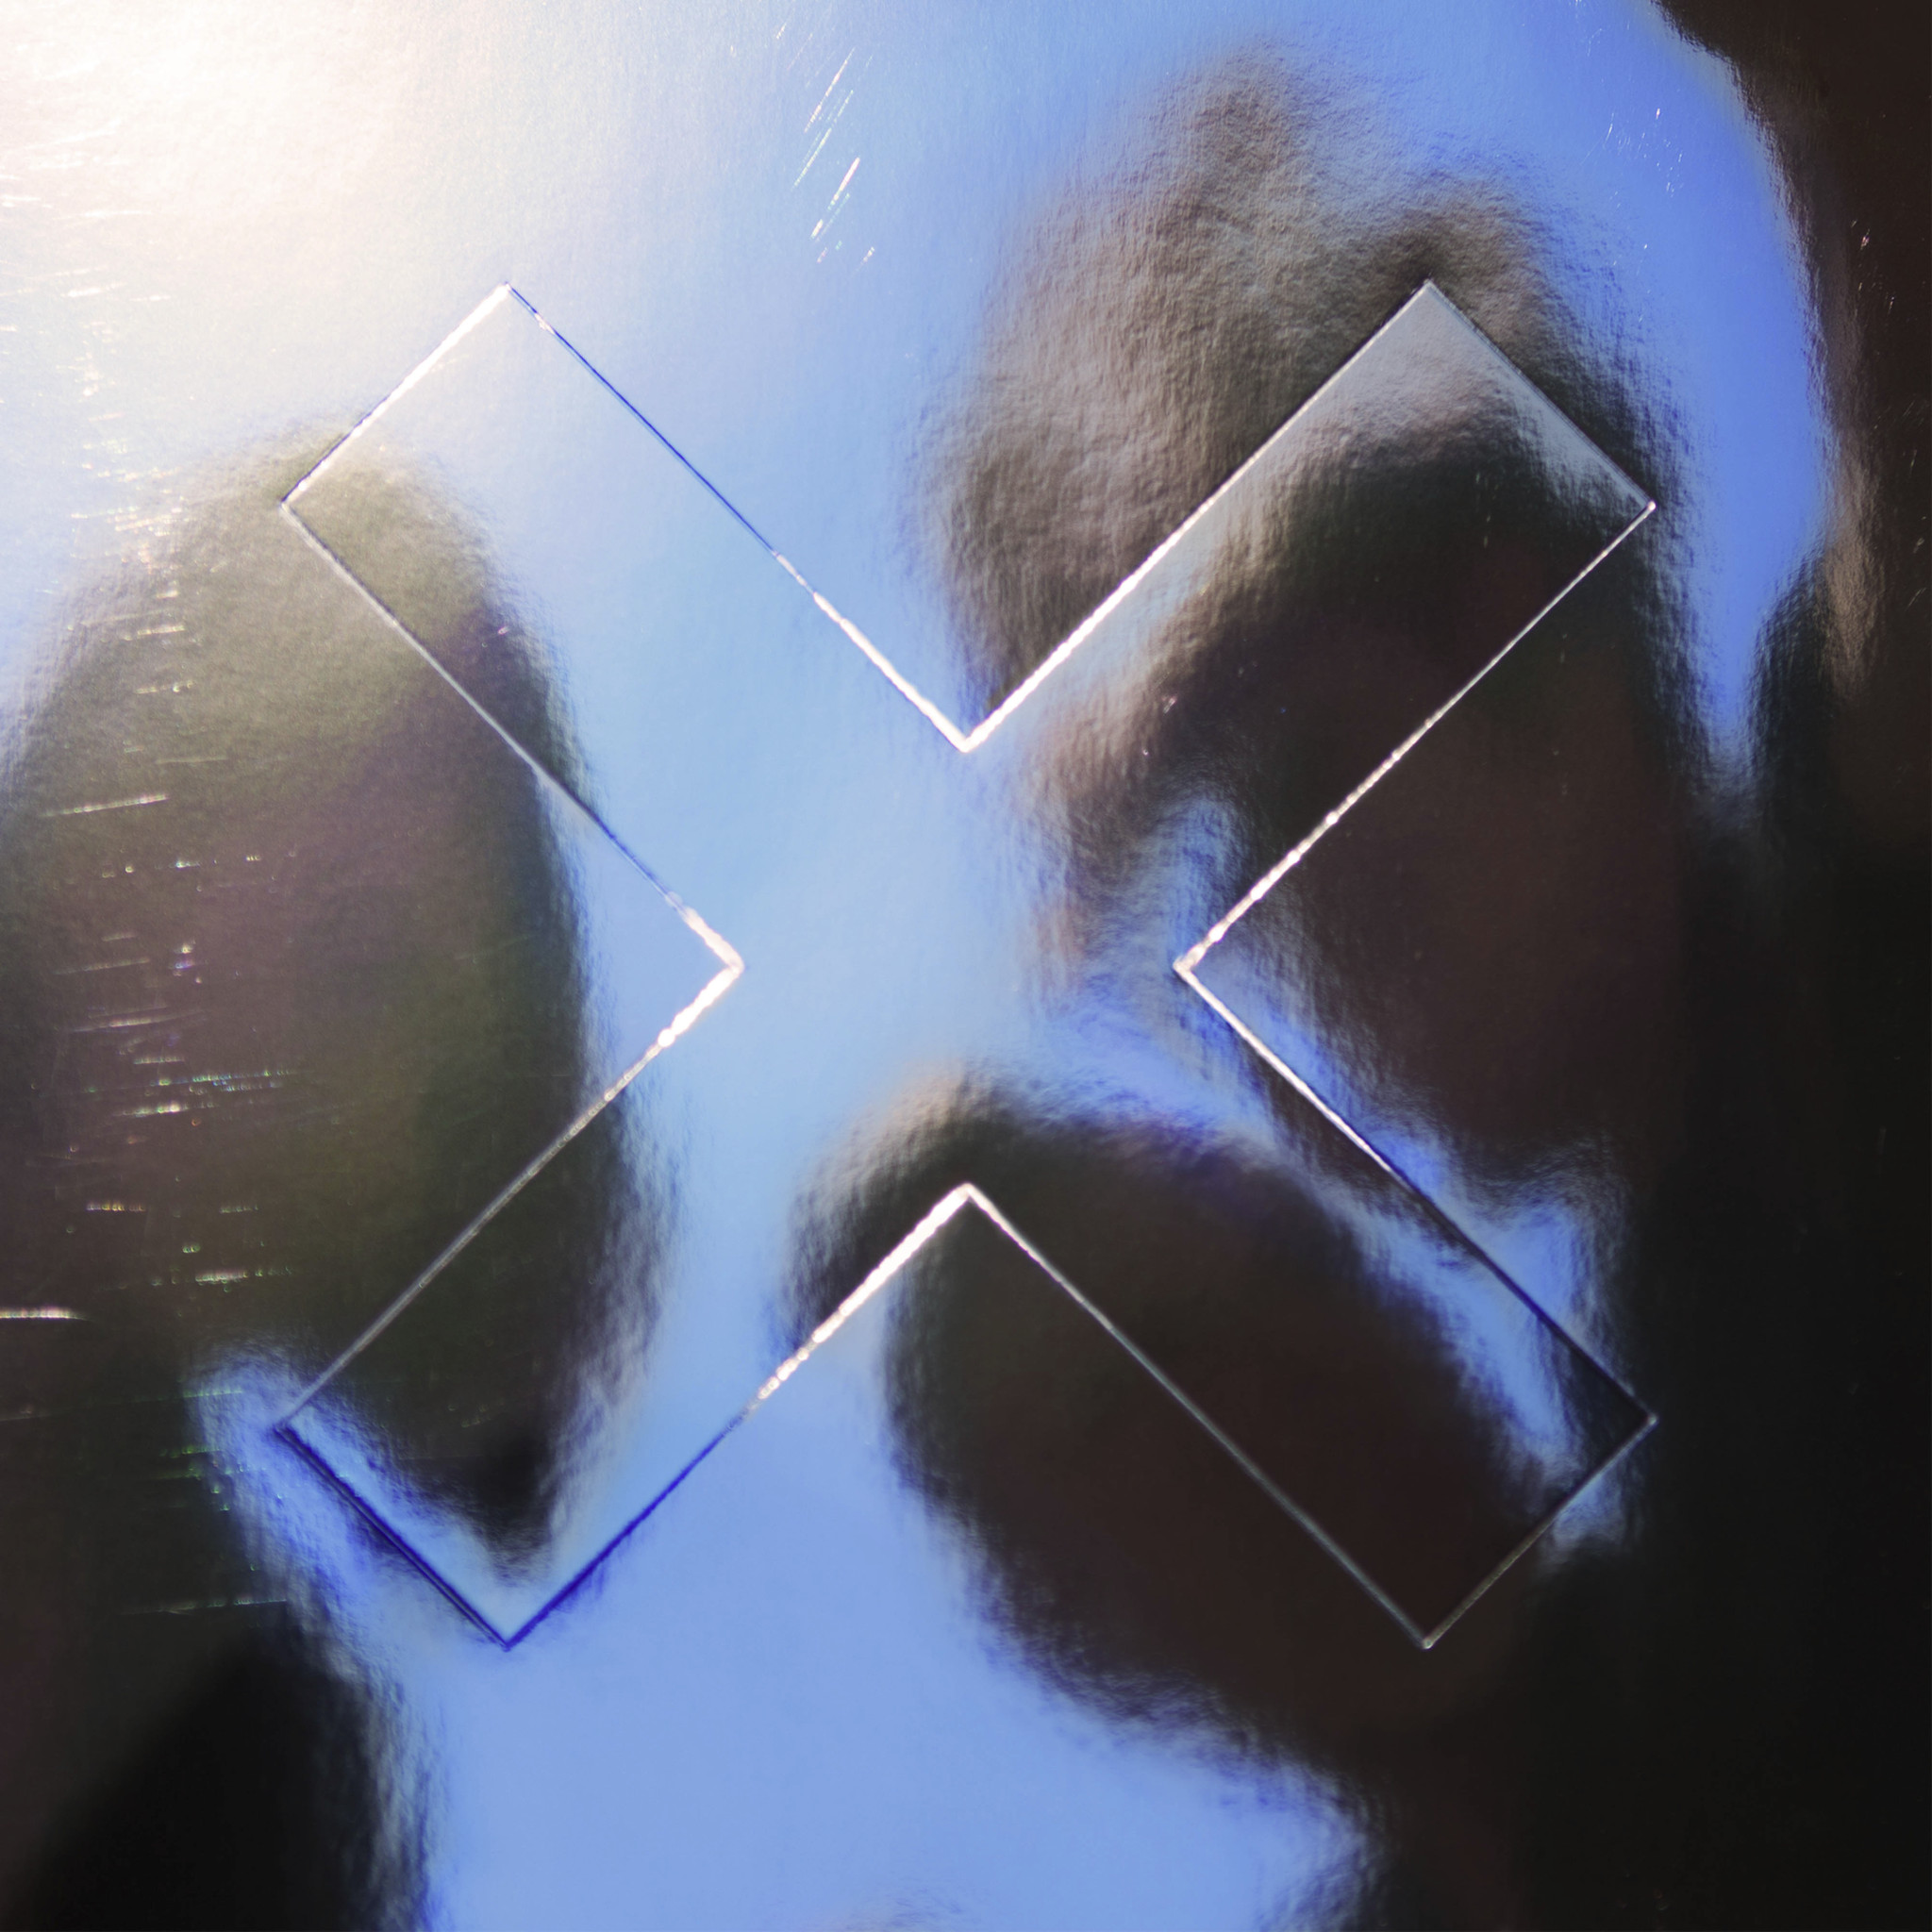 I migliori album pop del 2017 - xx